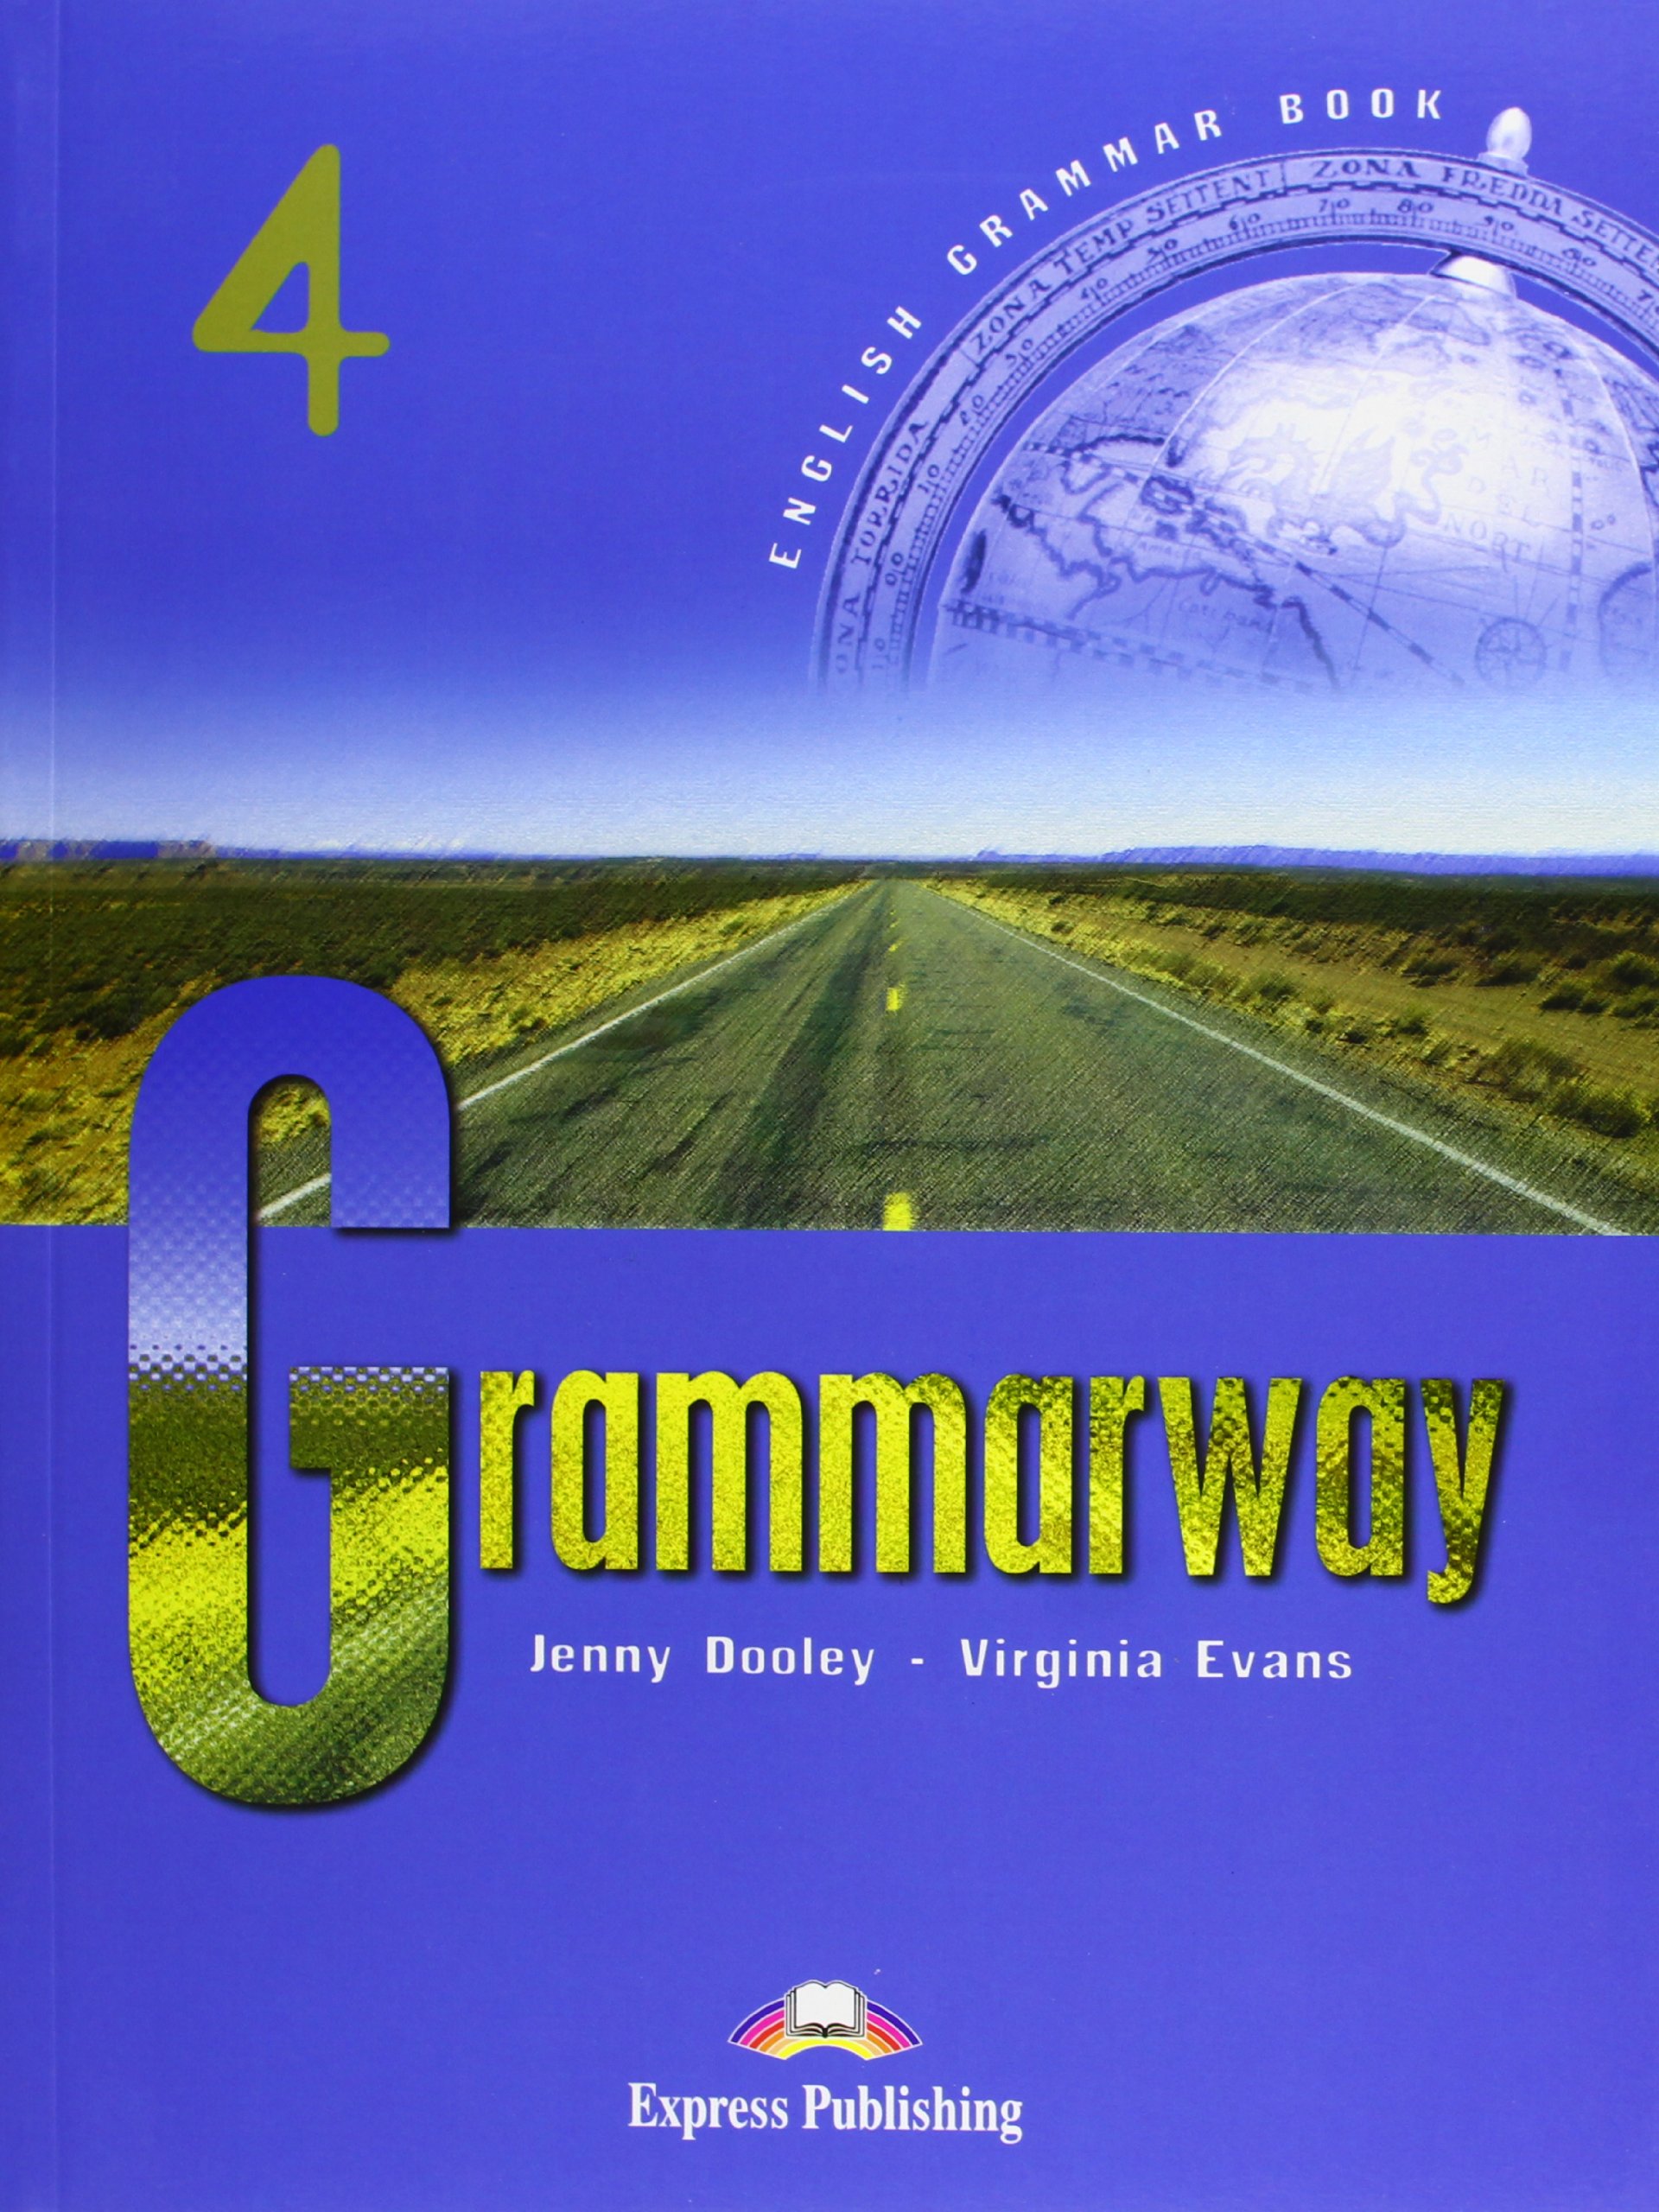 GRAMMARWAY 4 English Grammar Book